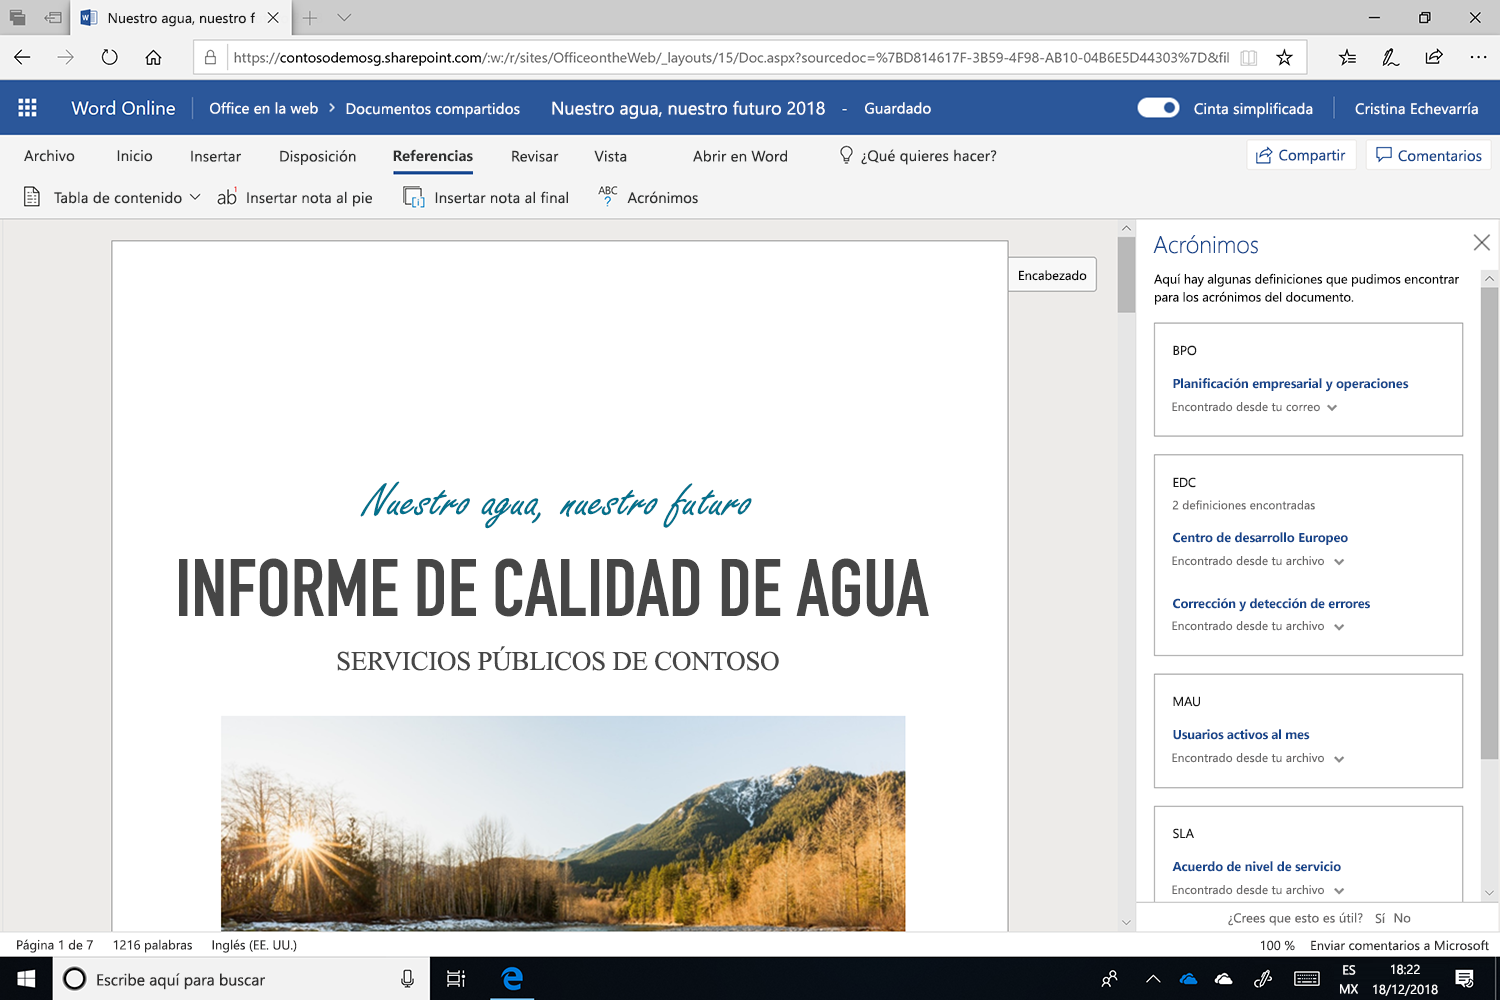 Captura de pantalla del panel de Acrónimos abierto en Microsoft Word.